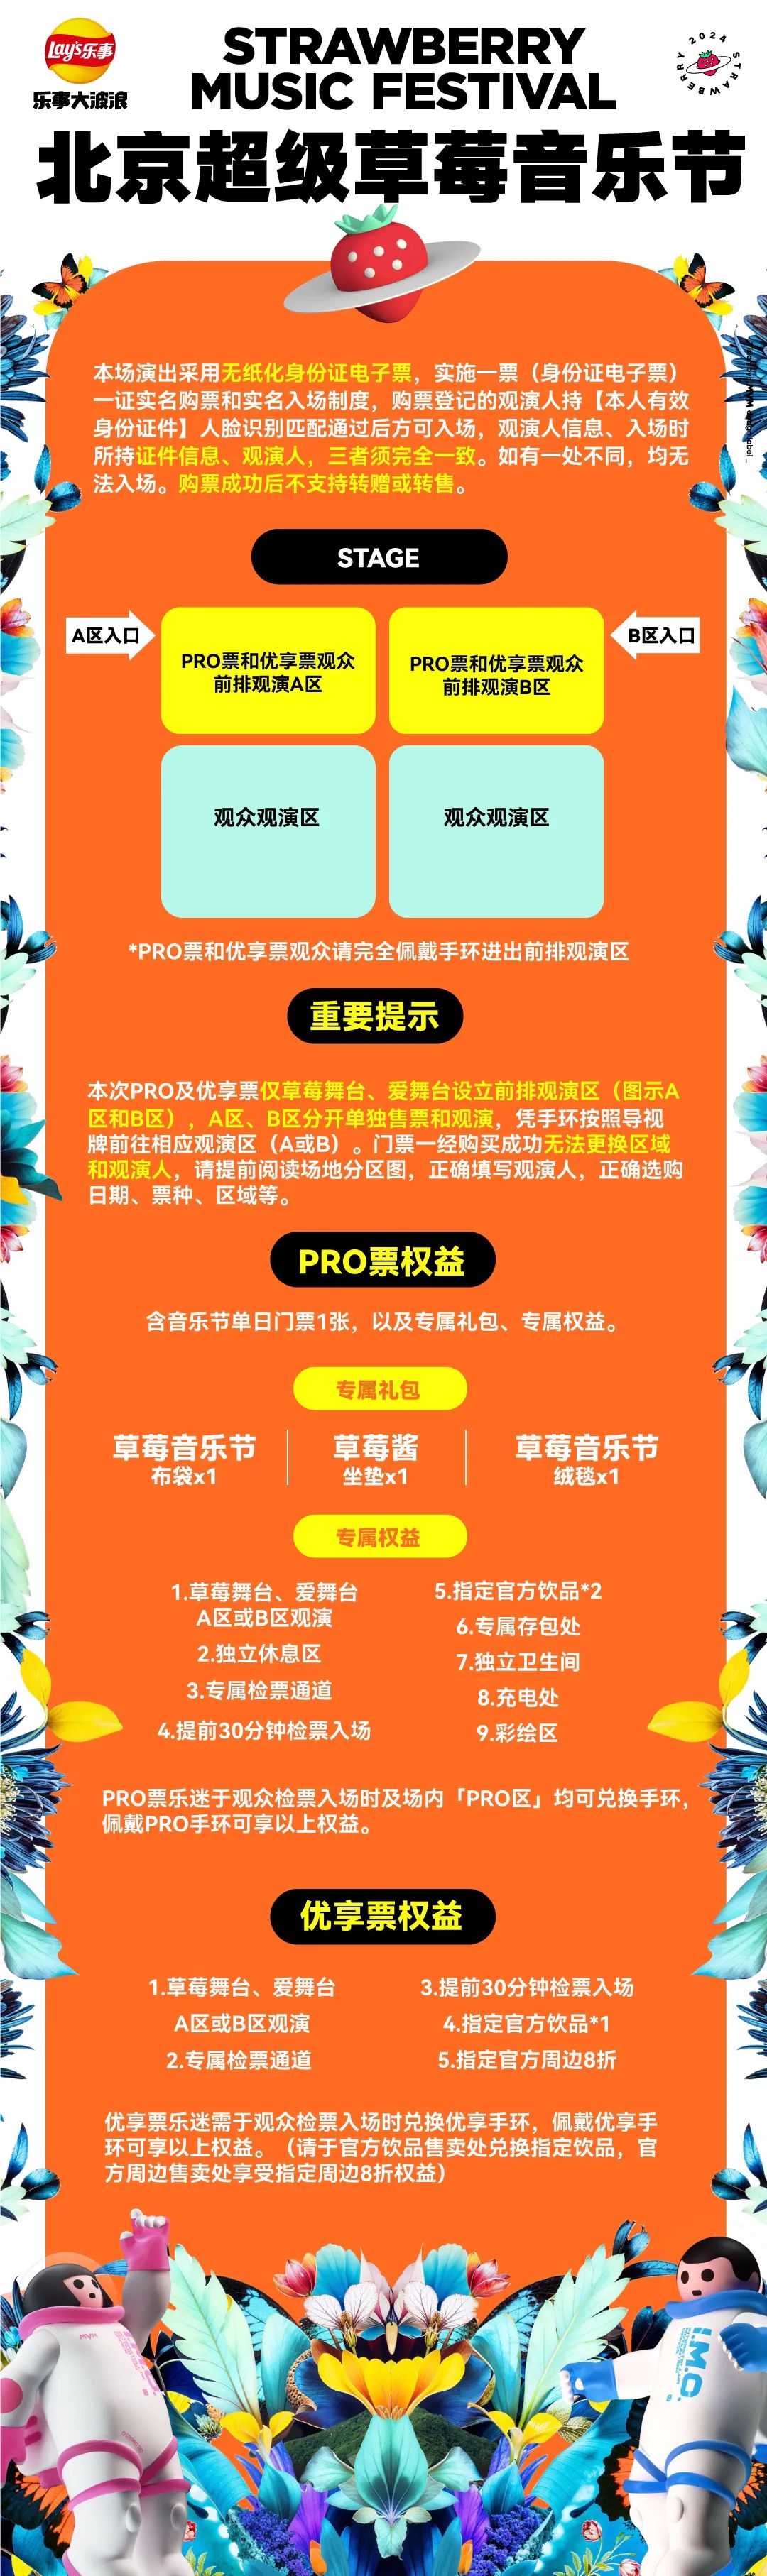 北京草莓音乐节门票